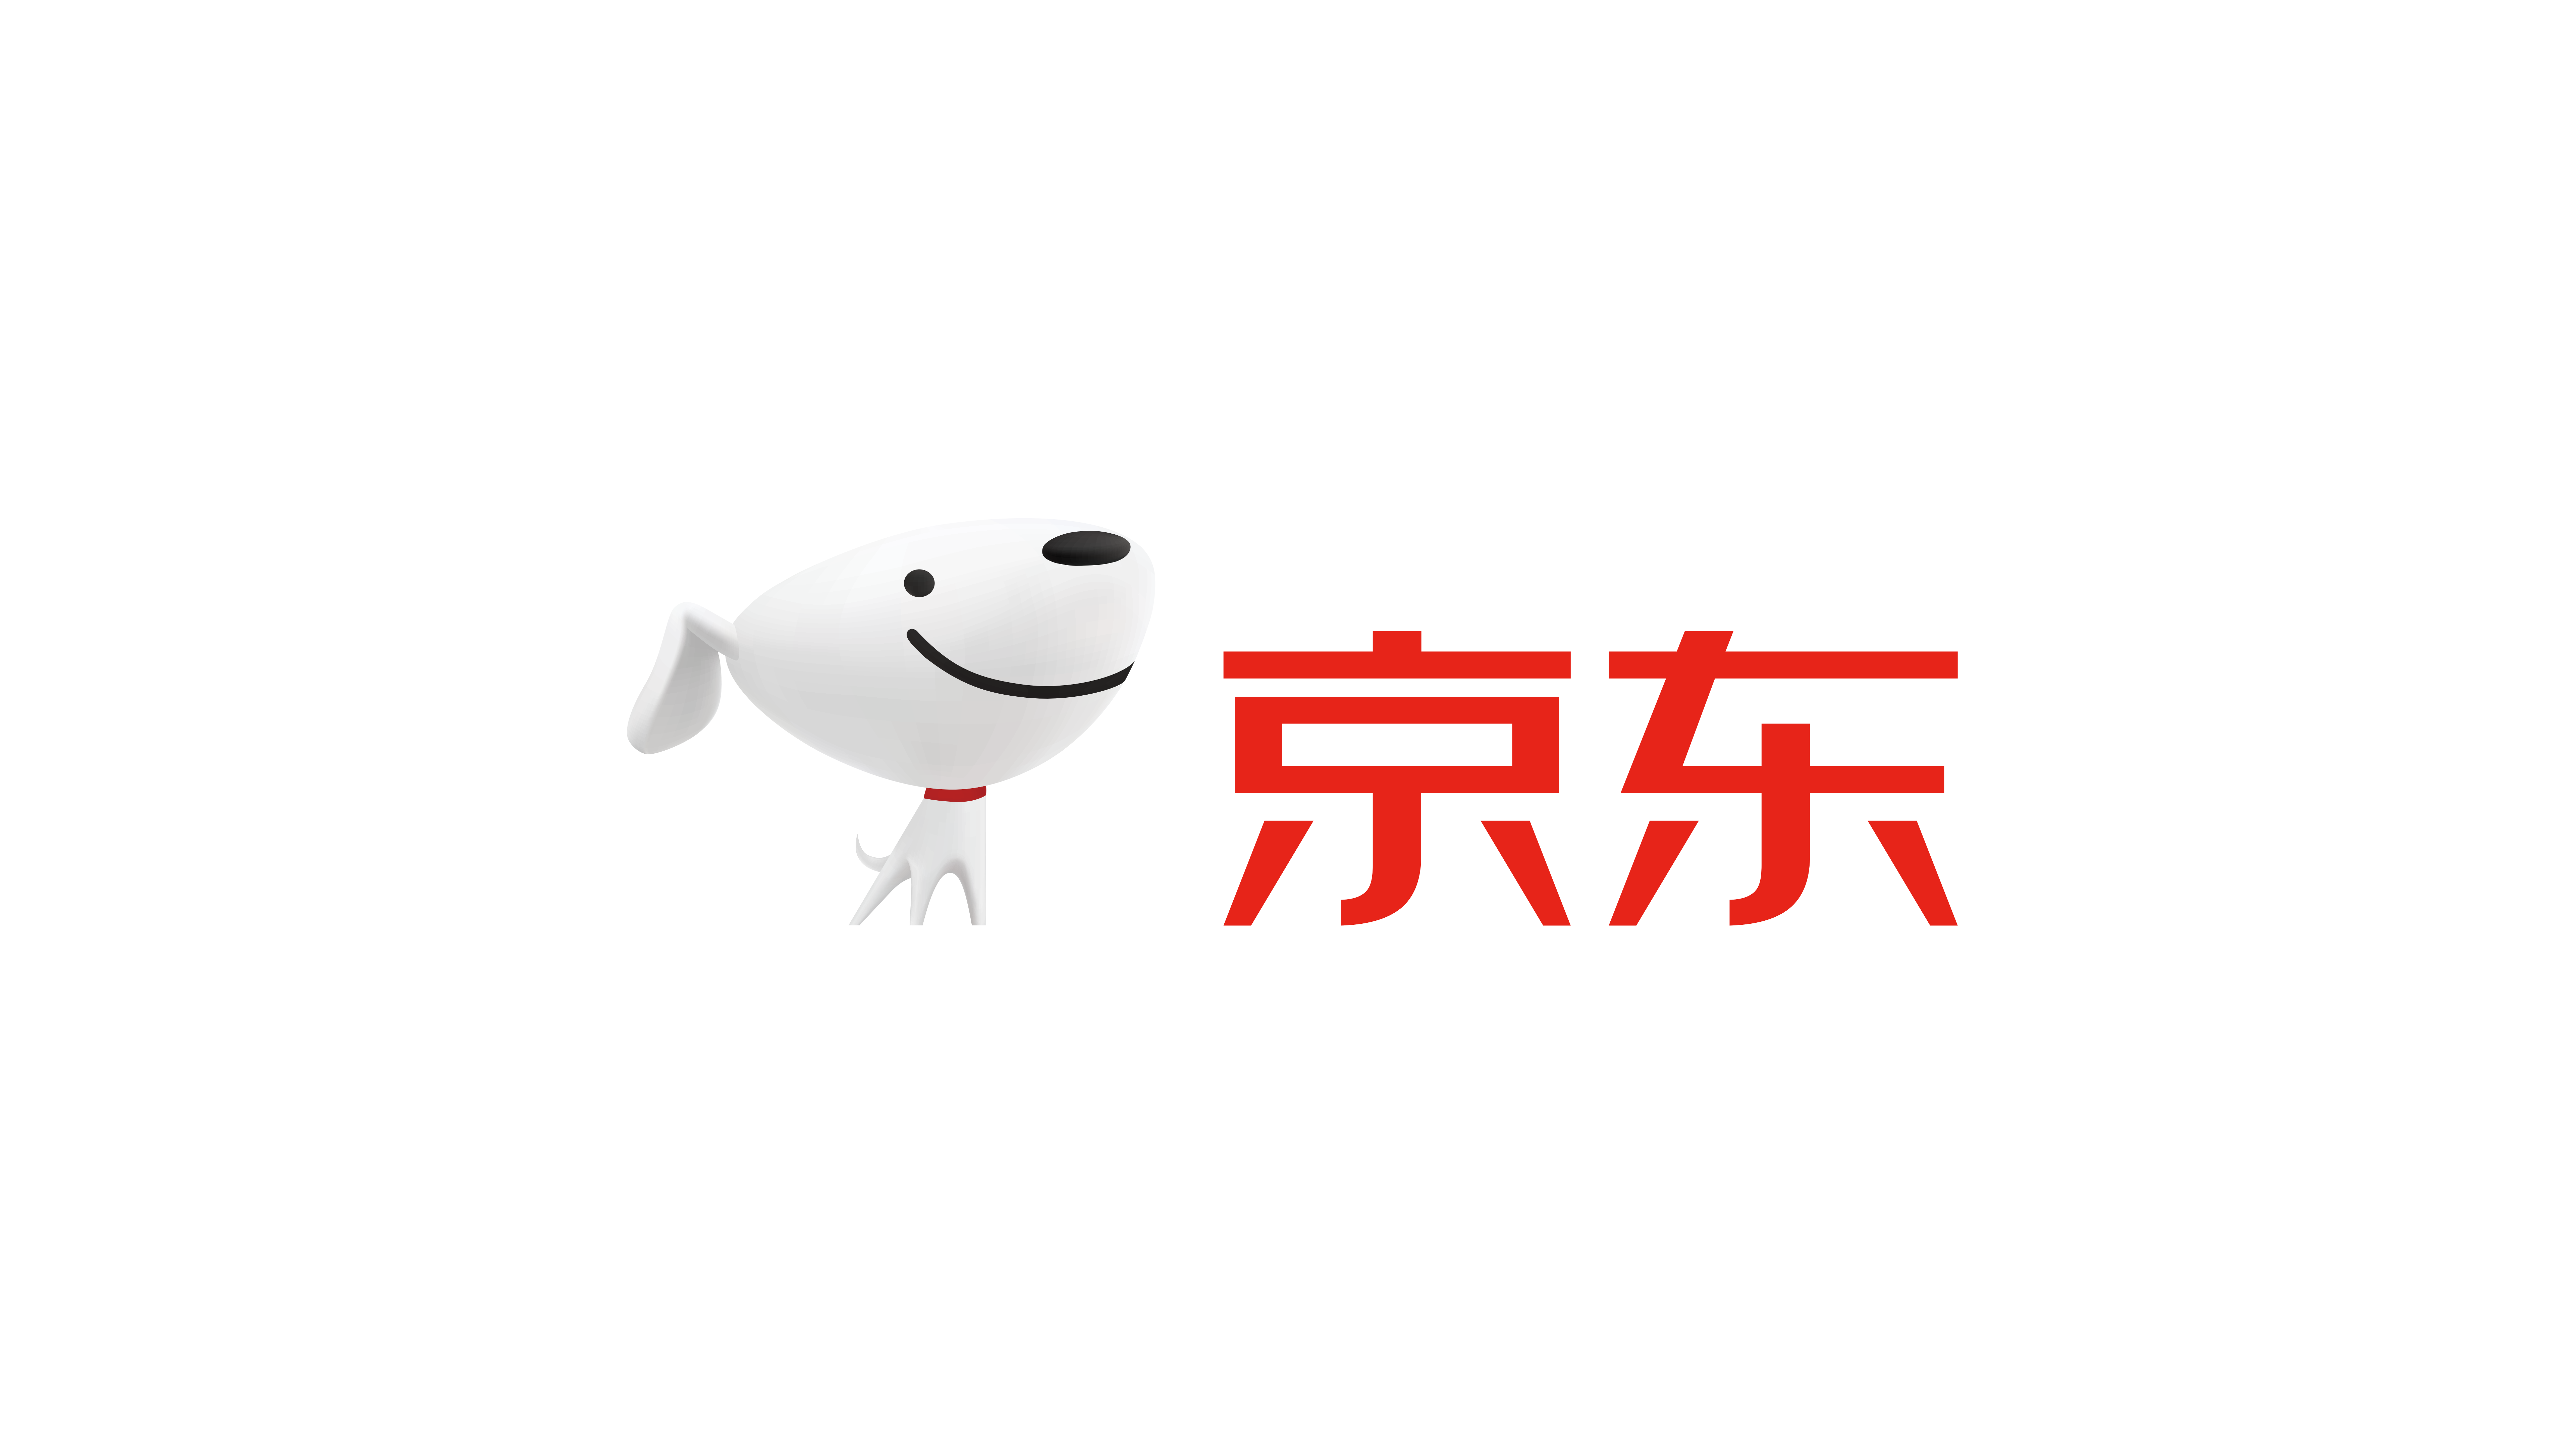 京东logo高清大图 素材图片